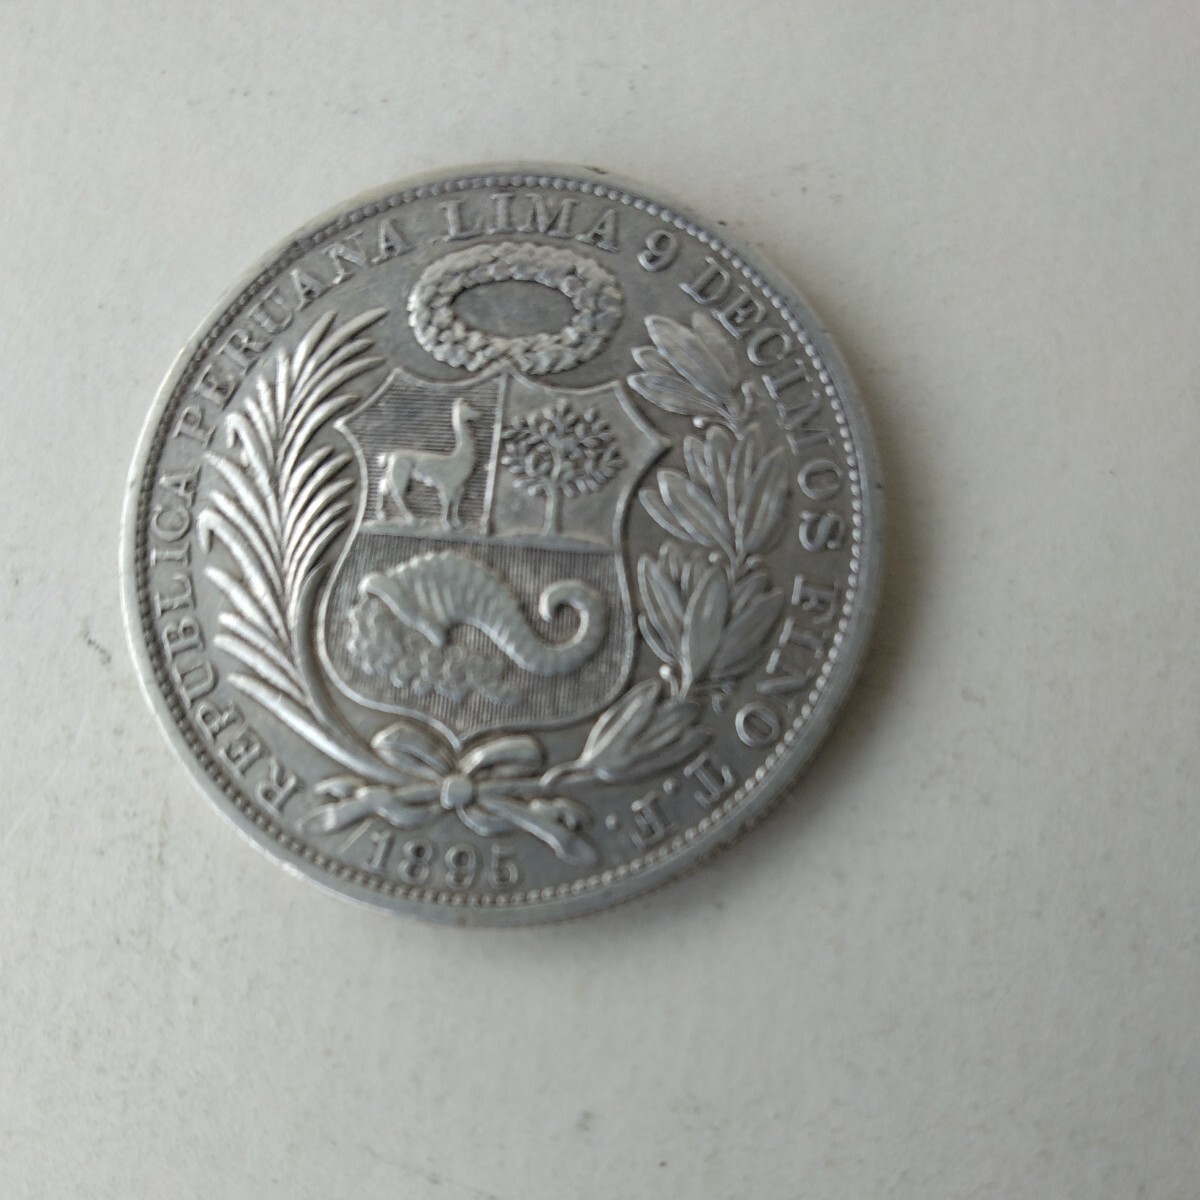 ペルー 銀貨の1ソル銀貨です。1895年製、よく分かりません。写真で、判断してください。の画像2